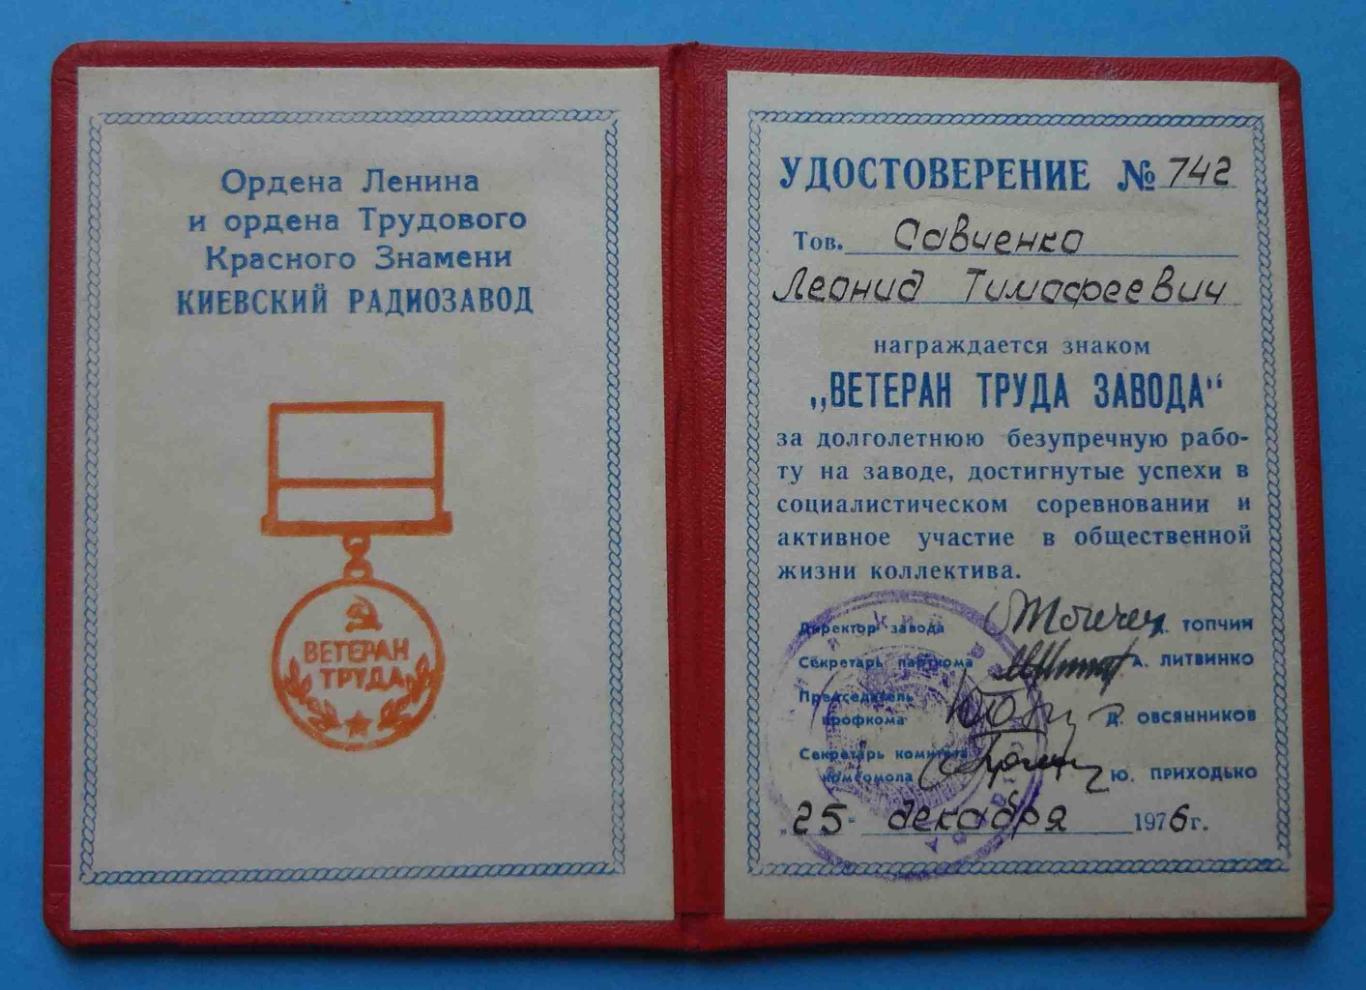 Ветеран труда завода КРЗ с удостоверением Киевский радиозавод 1